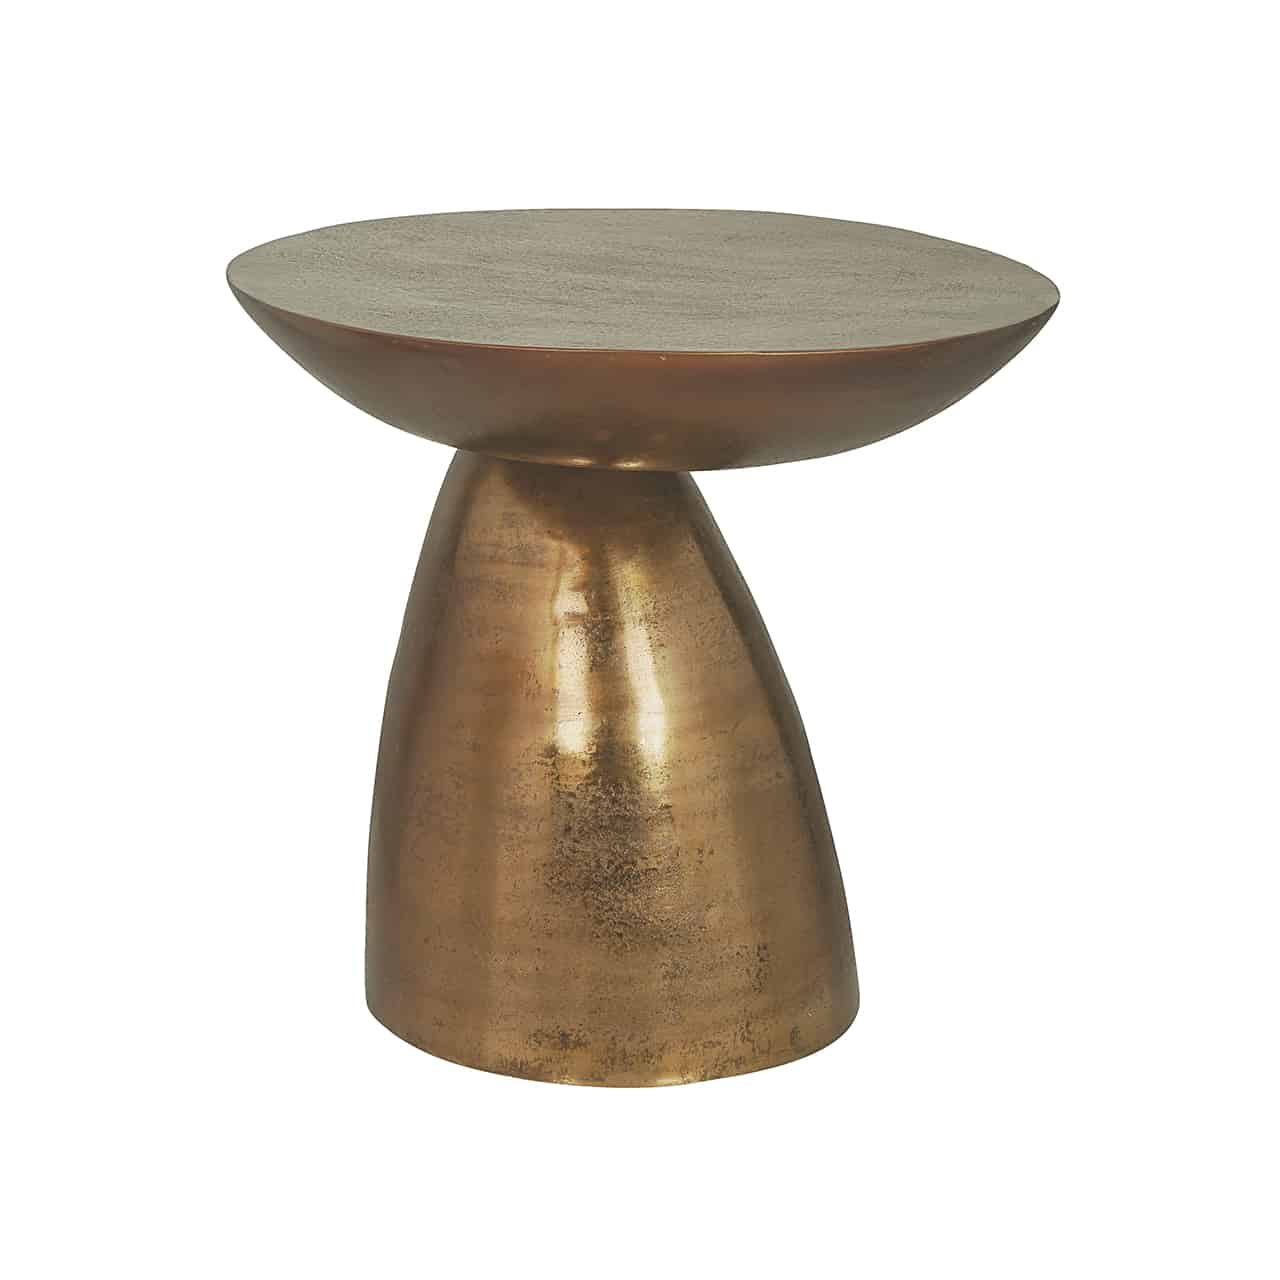 Goldener Beistelltisch; auf einem asymmetrischen, kegelförmigen  Fuß  liegt, nicht ganz mittig,  eine runde Tischplatte im Design einer abgedeckten, flachen  Schale auf.